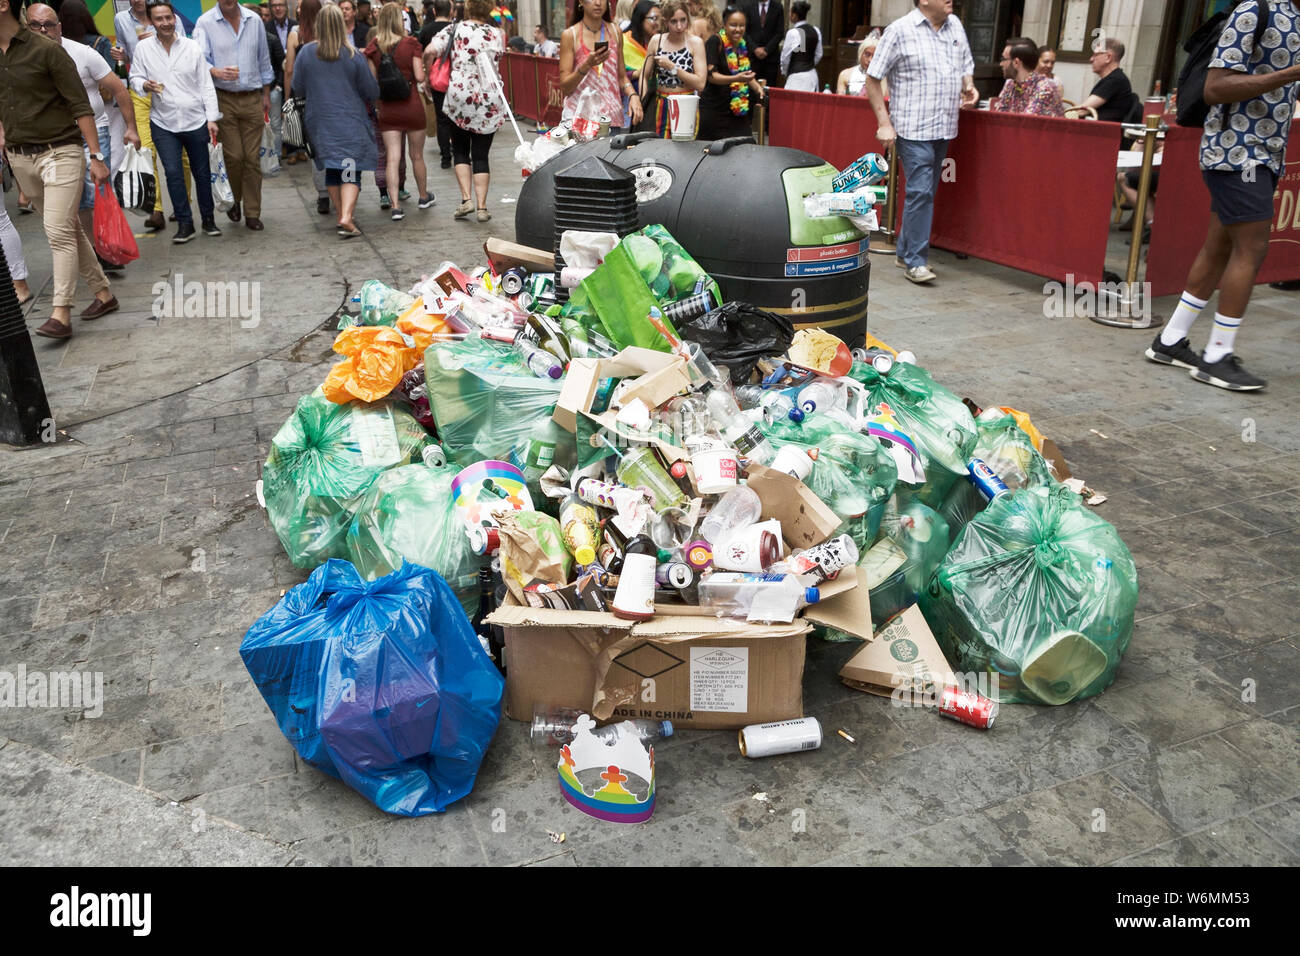 Basura callejera: Residuos plásticos, consumismo, basura de consumo, residuos de consumo, basura de consumo, basura que se desborda. Londres basura. Mantén a Gran Bretaña ordenada. Foto de stock